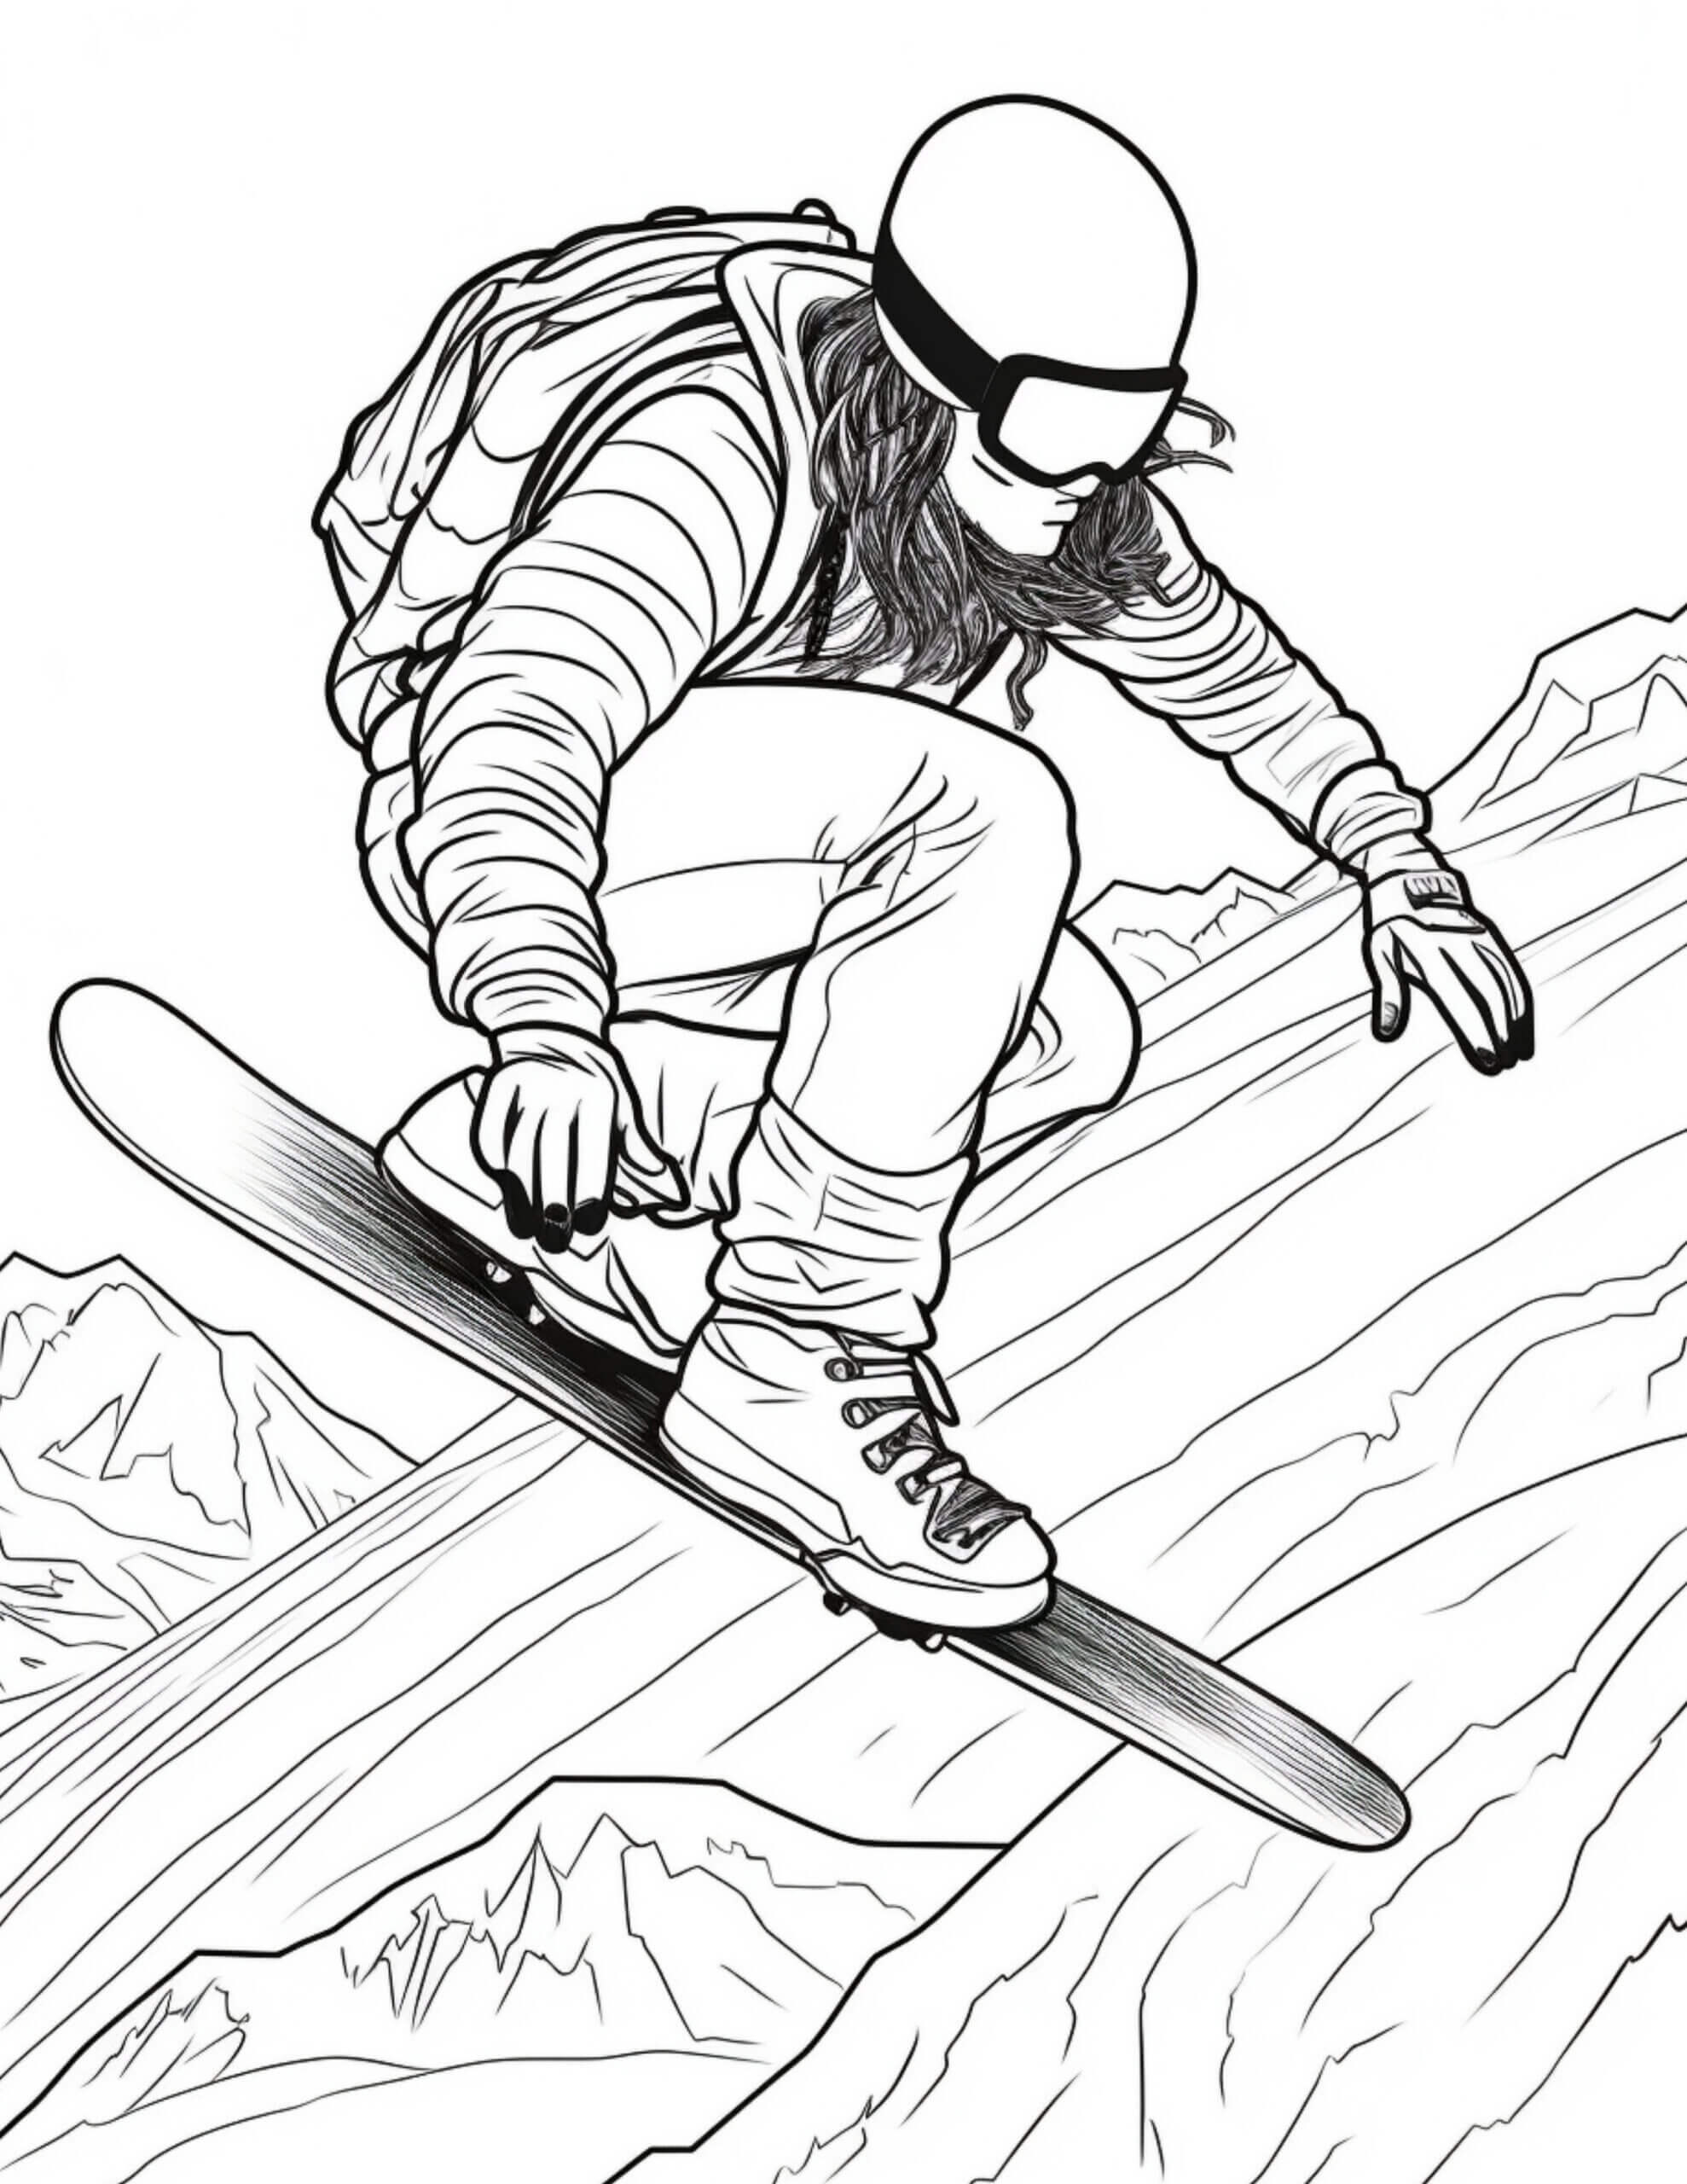 Snowboard Incrível para colorir